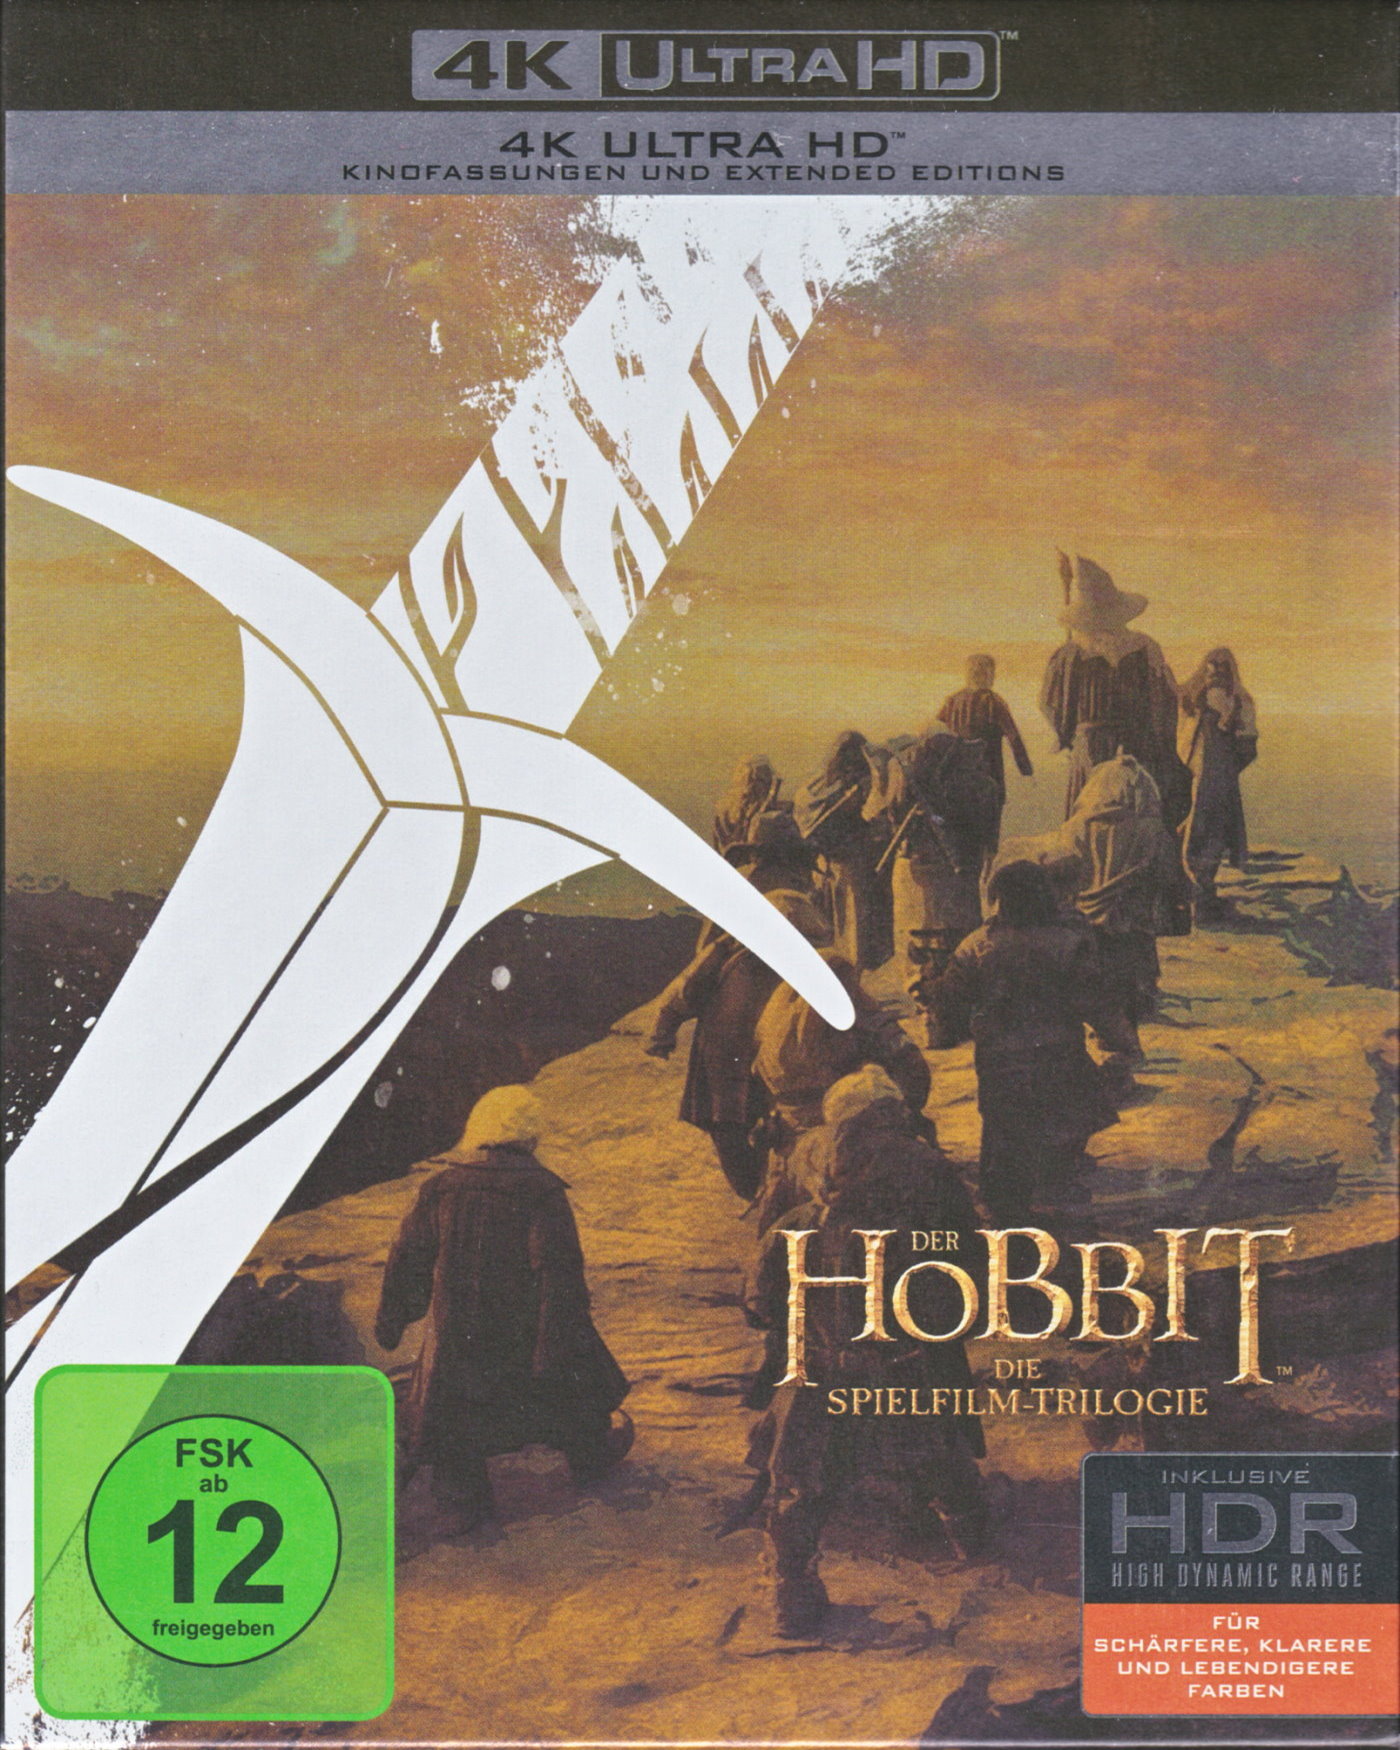 Cover - Der Hobbit - Die Schlacht der fünf Heere.jpg